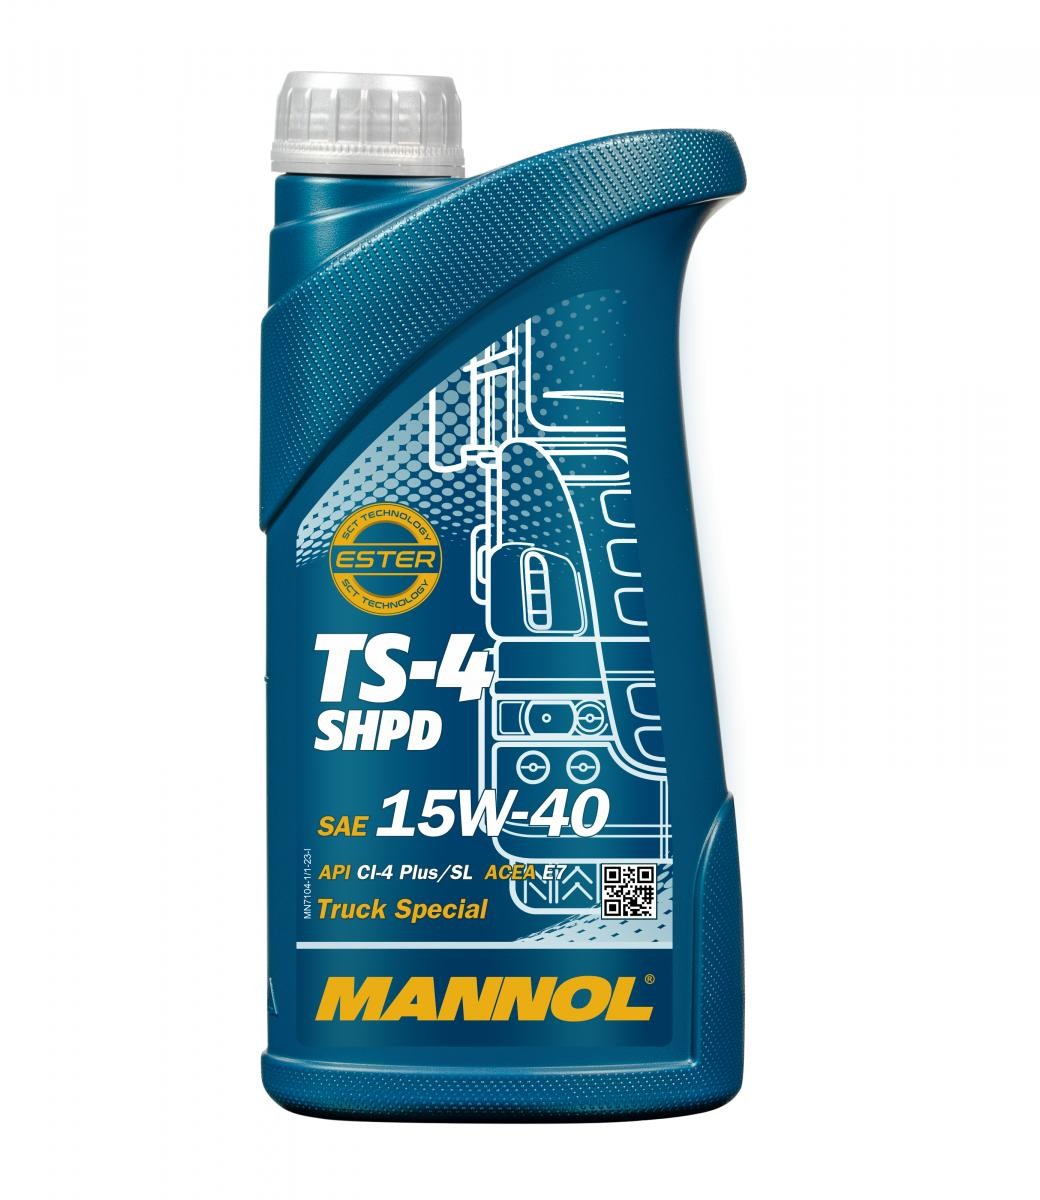 Car oil Mack EO-M Plus MANNOL - MN7104-1 TS-4, SHPD